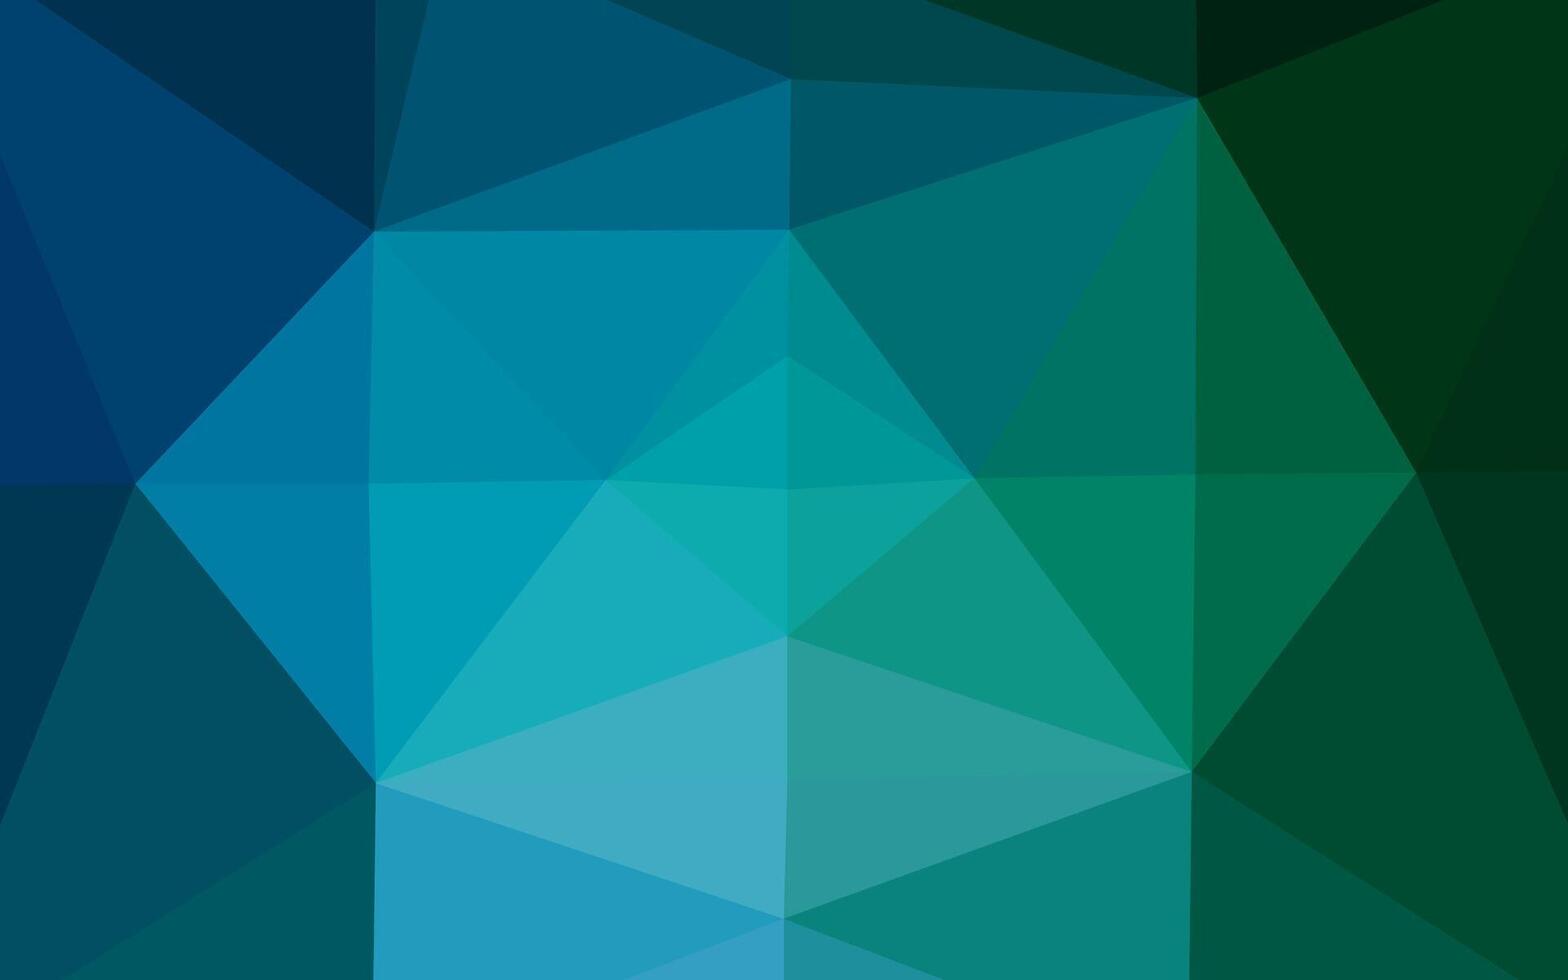 donkerblauwe, groene vector laag poly textuur.